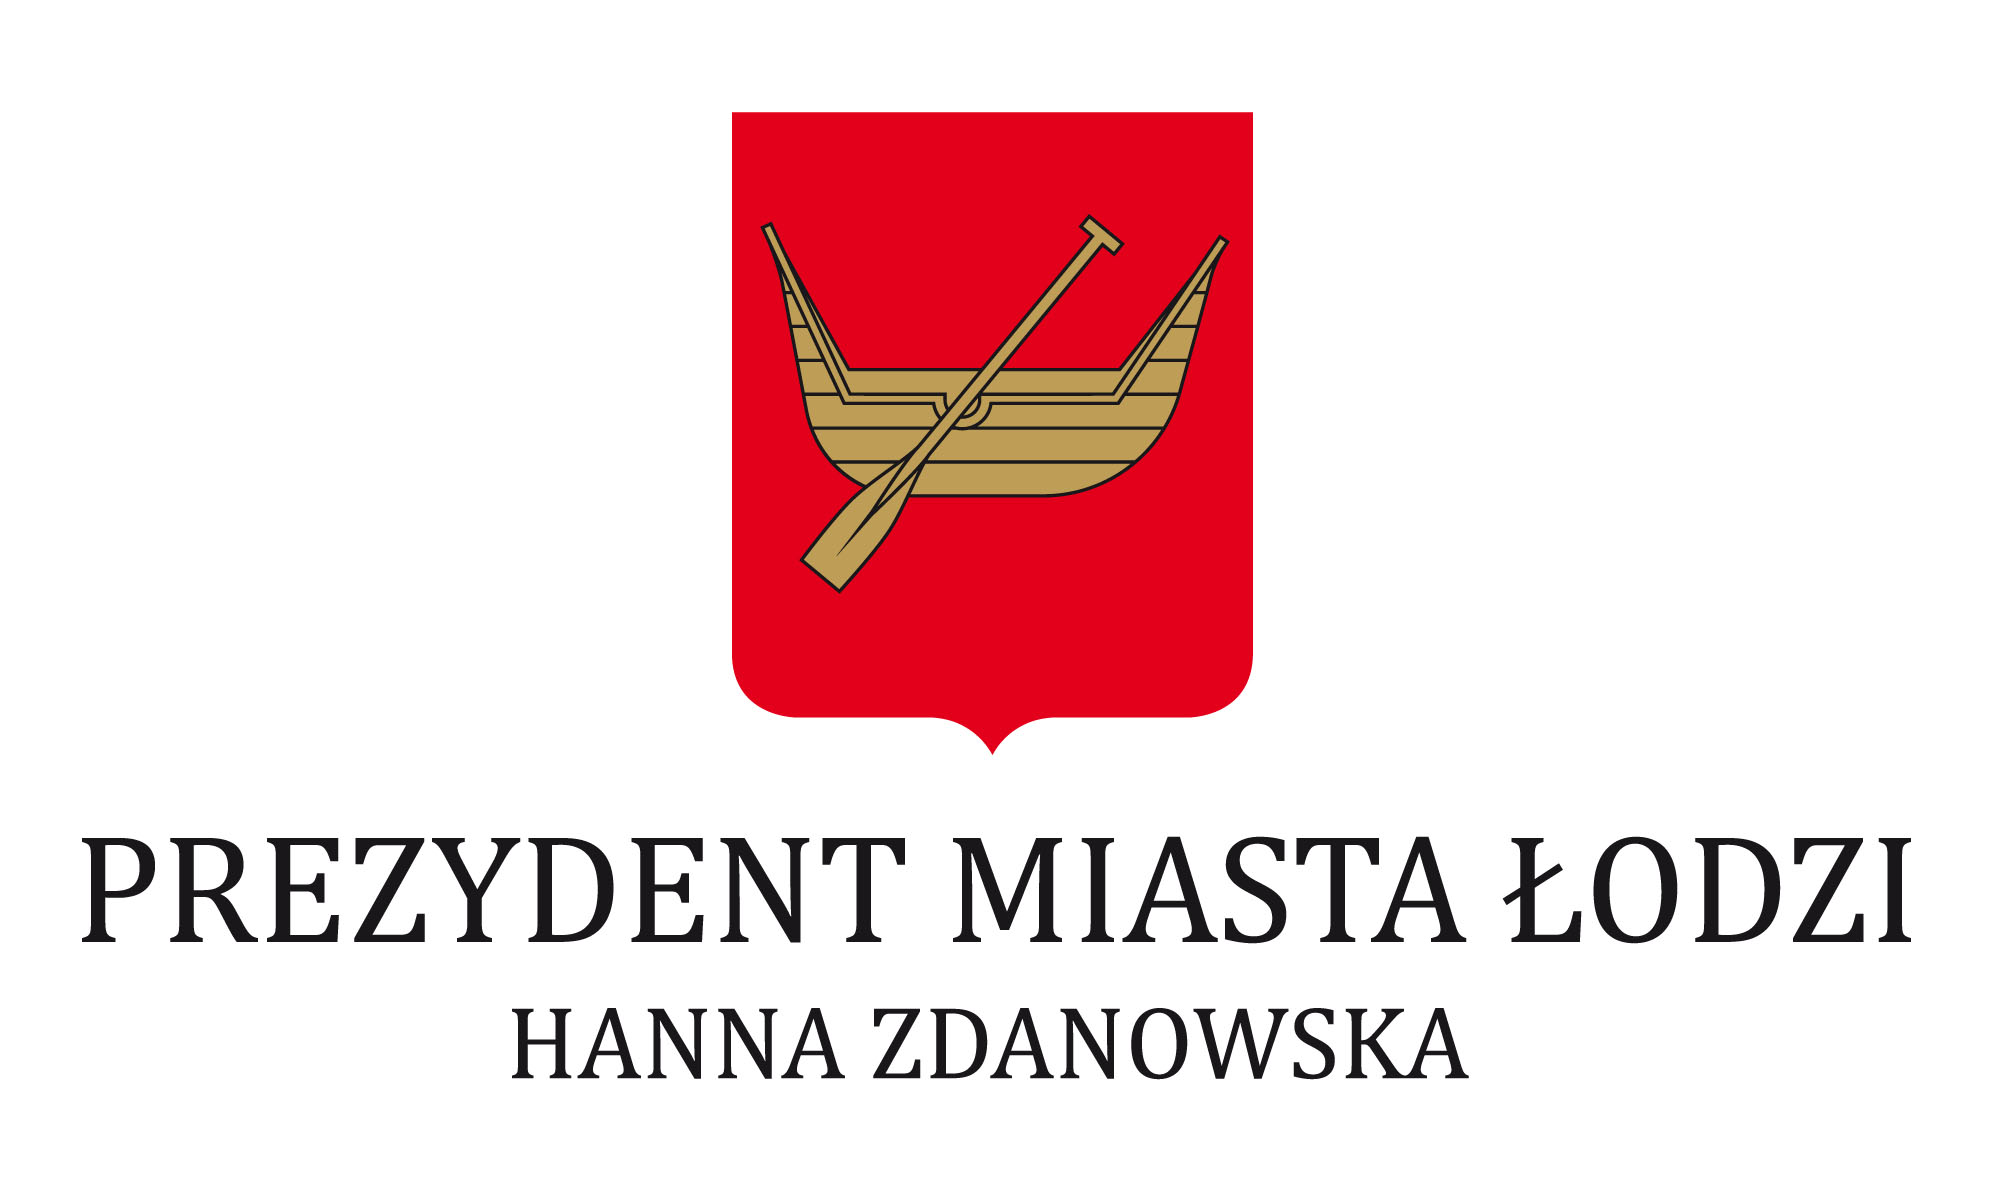 prezydent miasta logo kopia